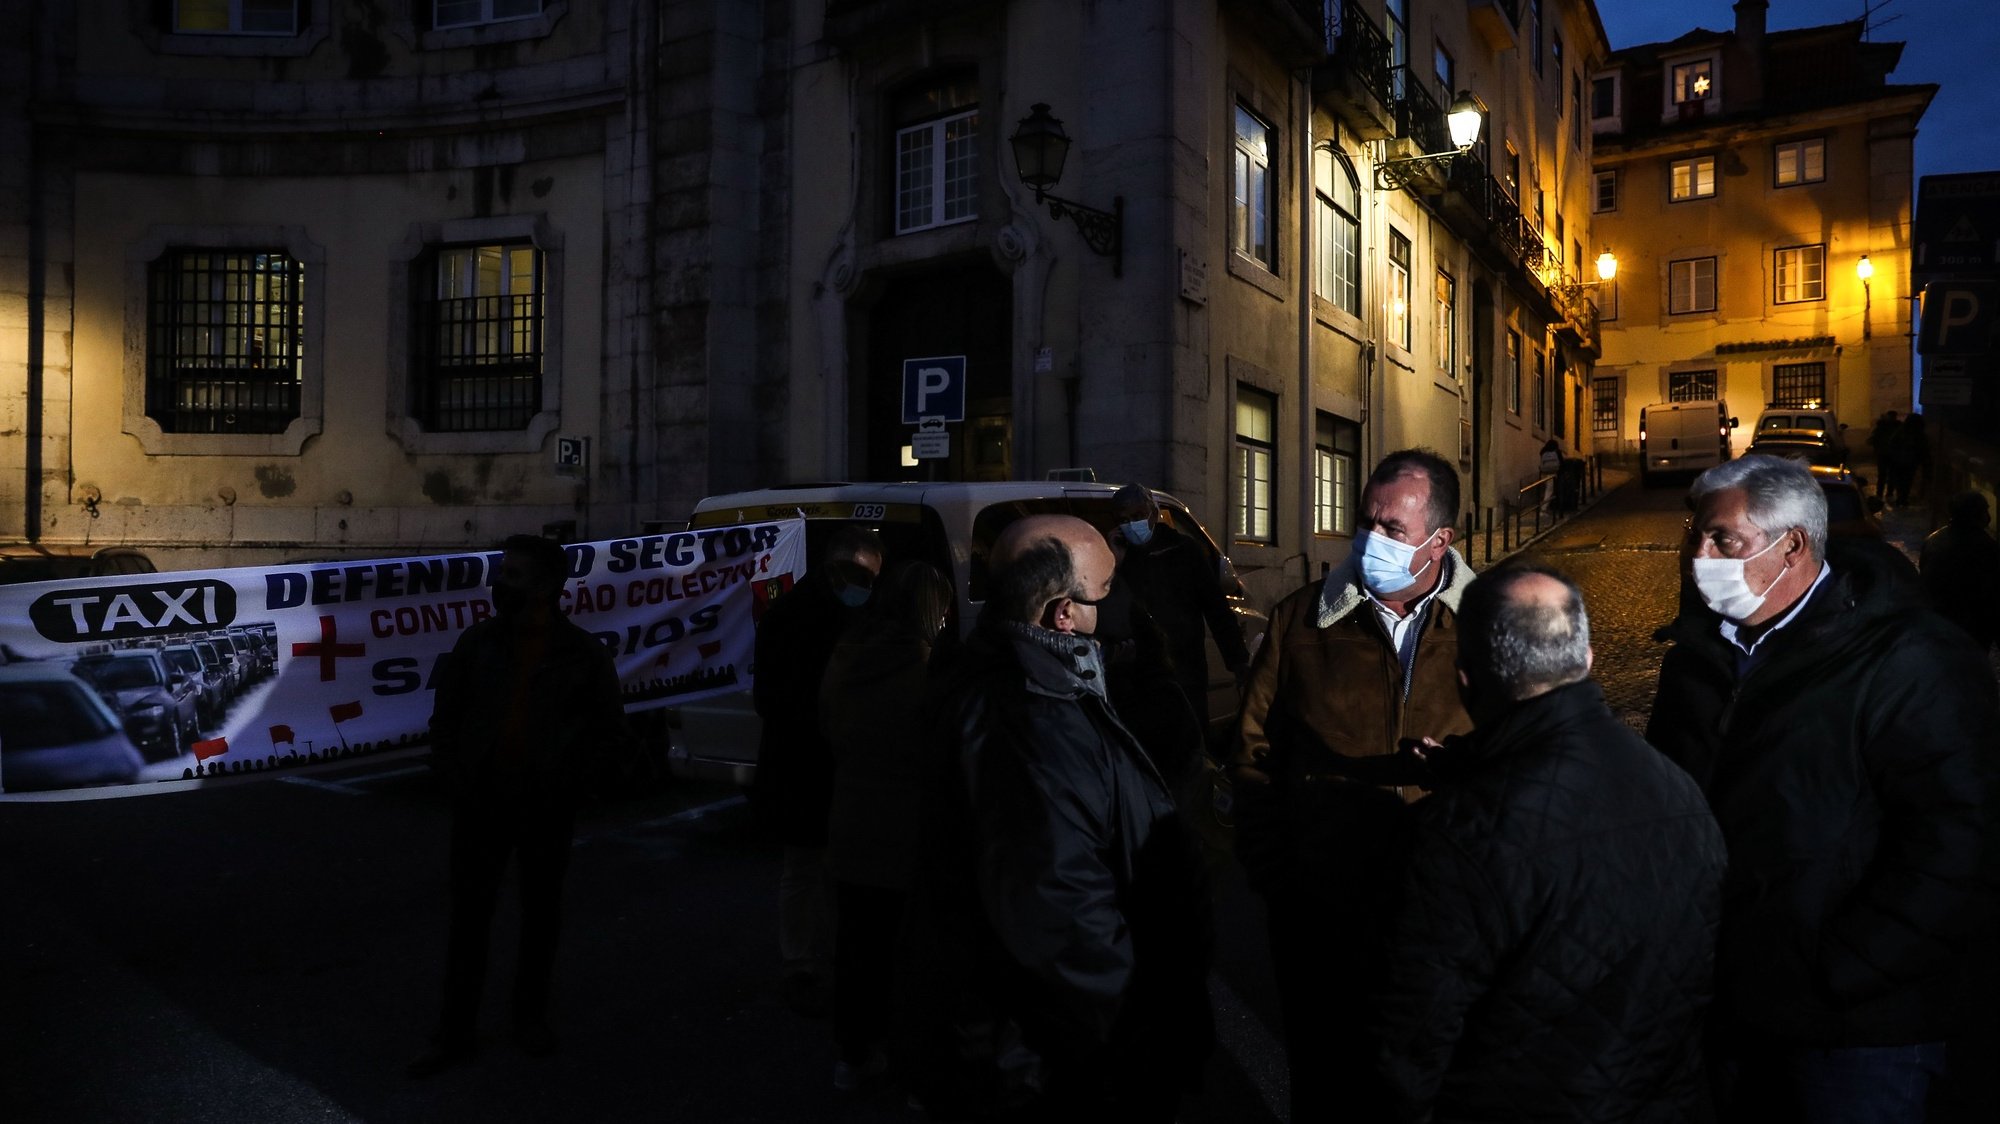 Taxistas participam numa vigília promovida pela Fectrans - Federação dos Sindicatos dos Transportes e Comunicações, pela defesa do setor dos transportes, frente ao Ministério do Ambiente, em Lisboa, 18 de dezembro de 2020. MÁRIO CRUZ/LUSA